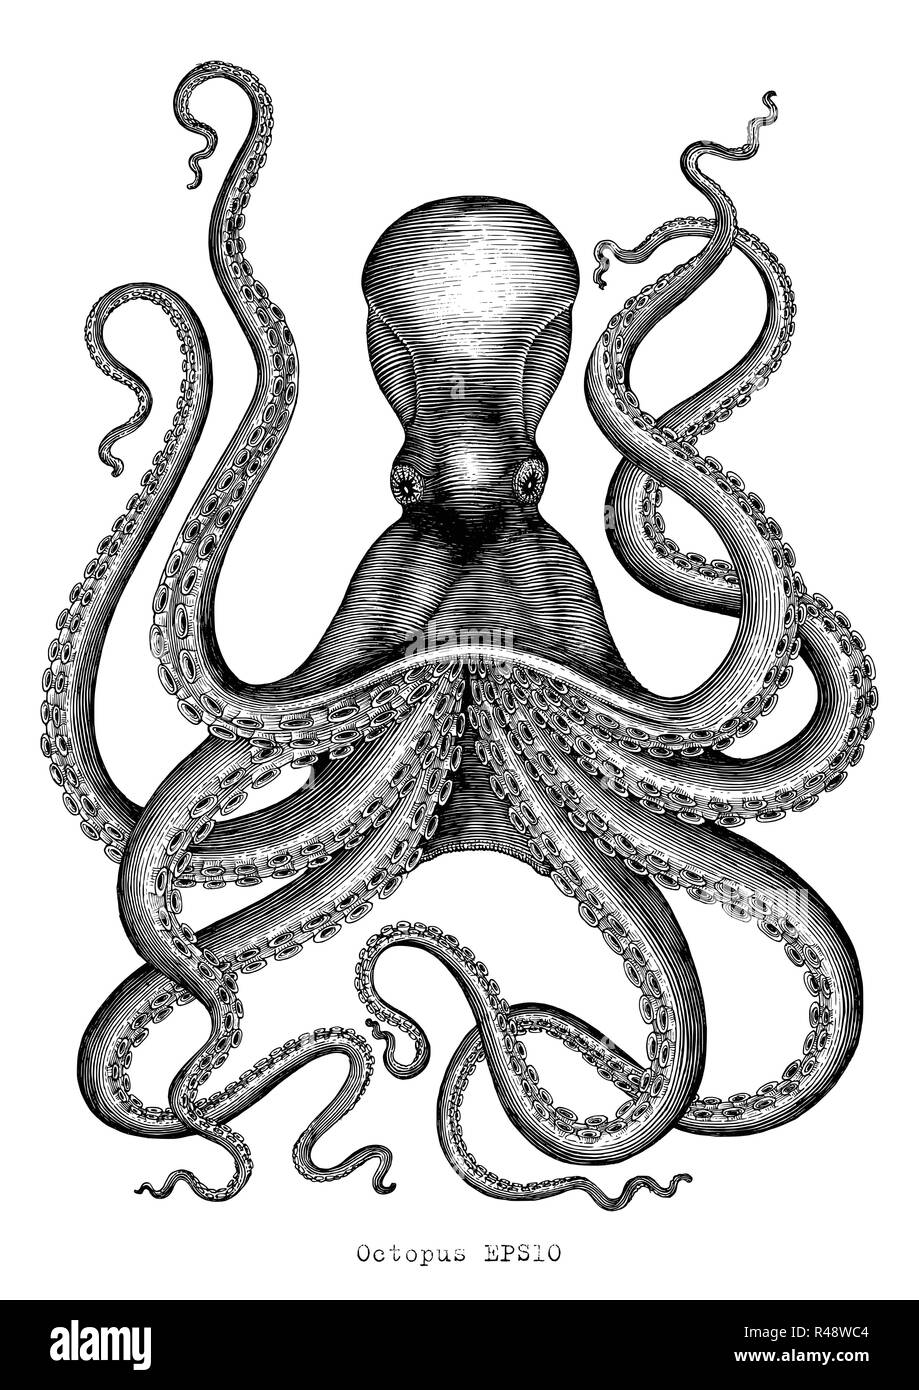 Le poulpe dessin à la main vintage illustration gravure sur fond blanc Illustration de Vecteur